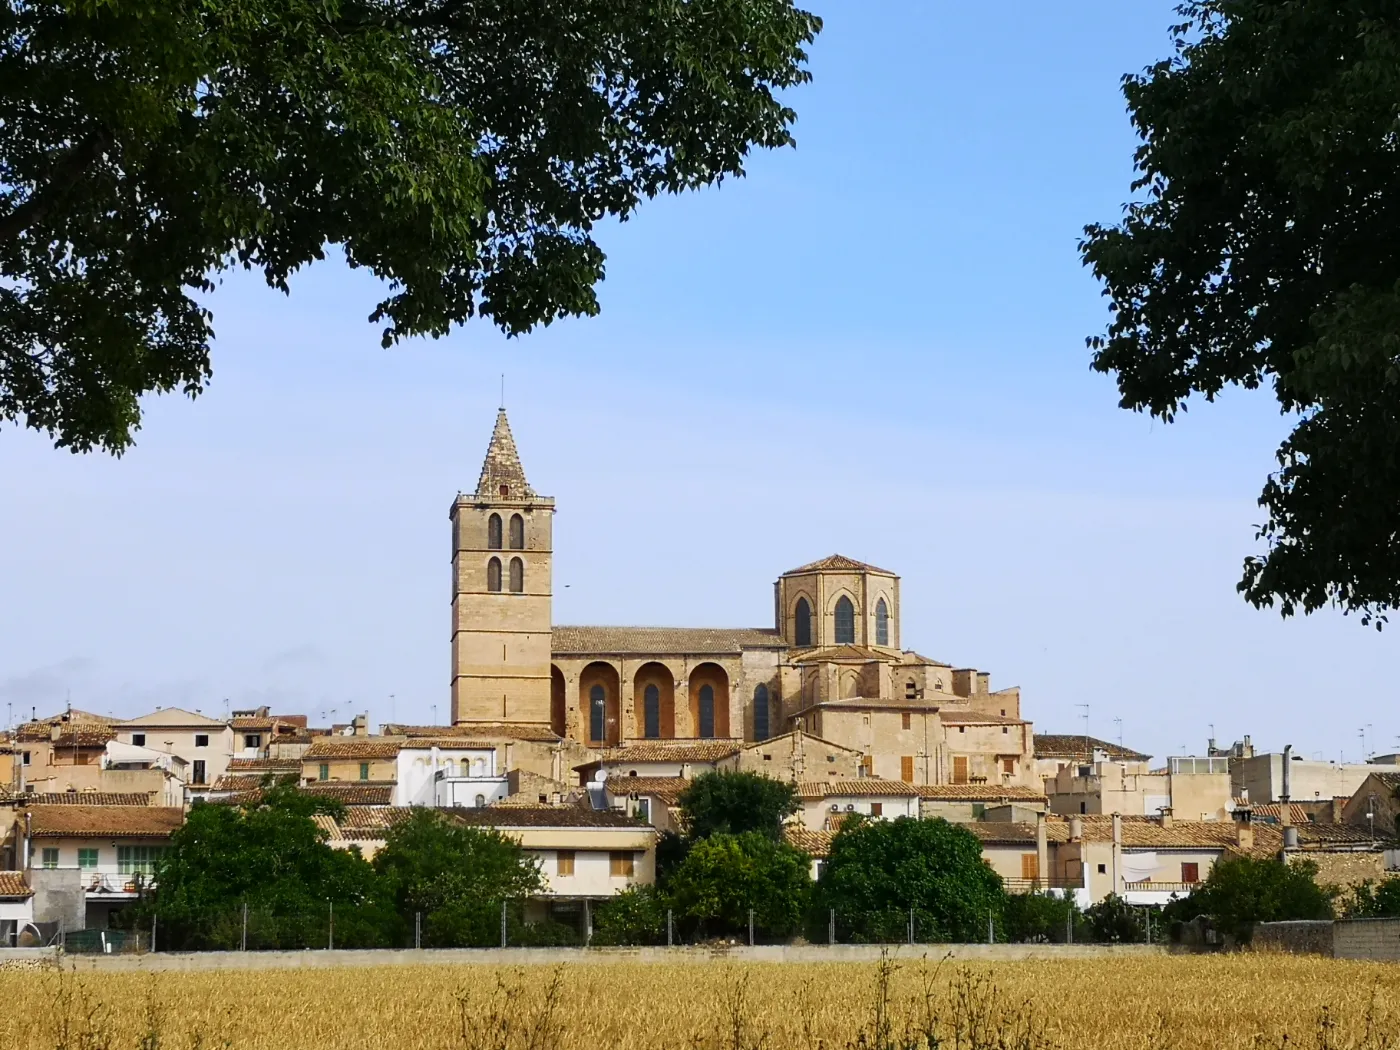 Kirken i byen Sineu på øen Mallorca i Spanien, set fra afstand.